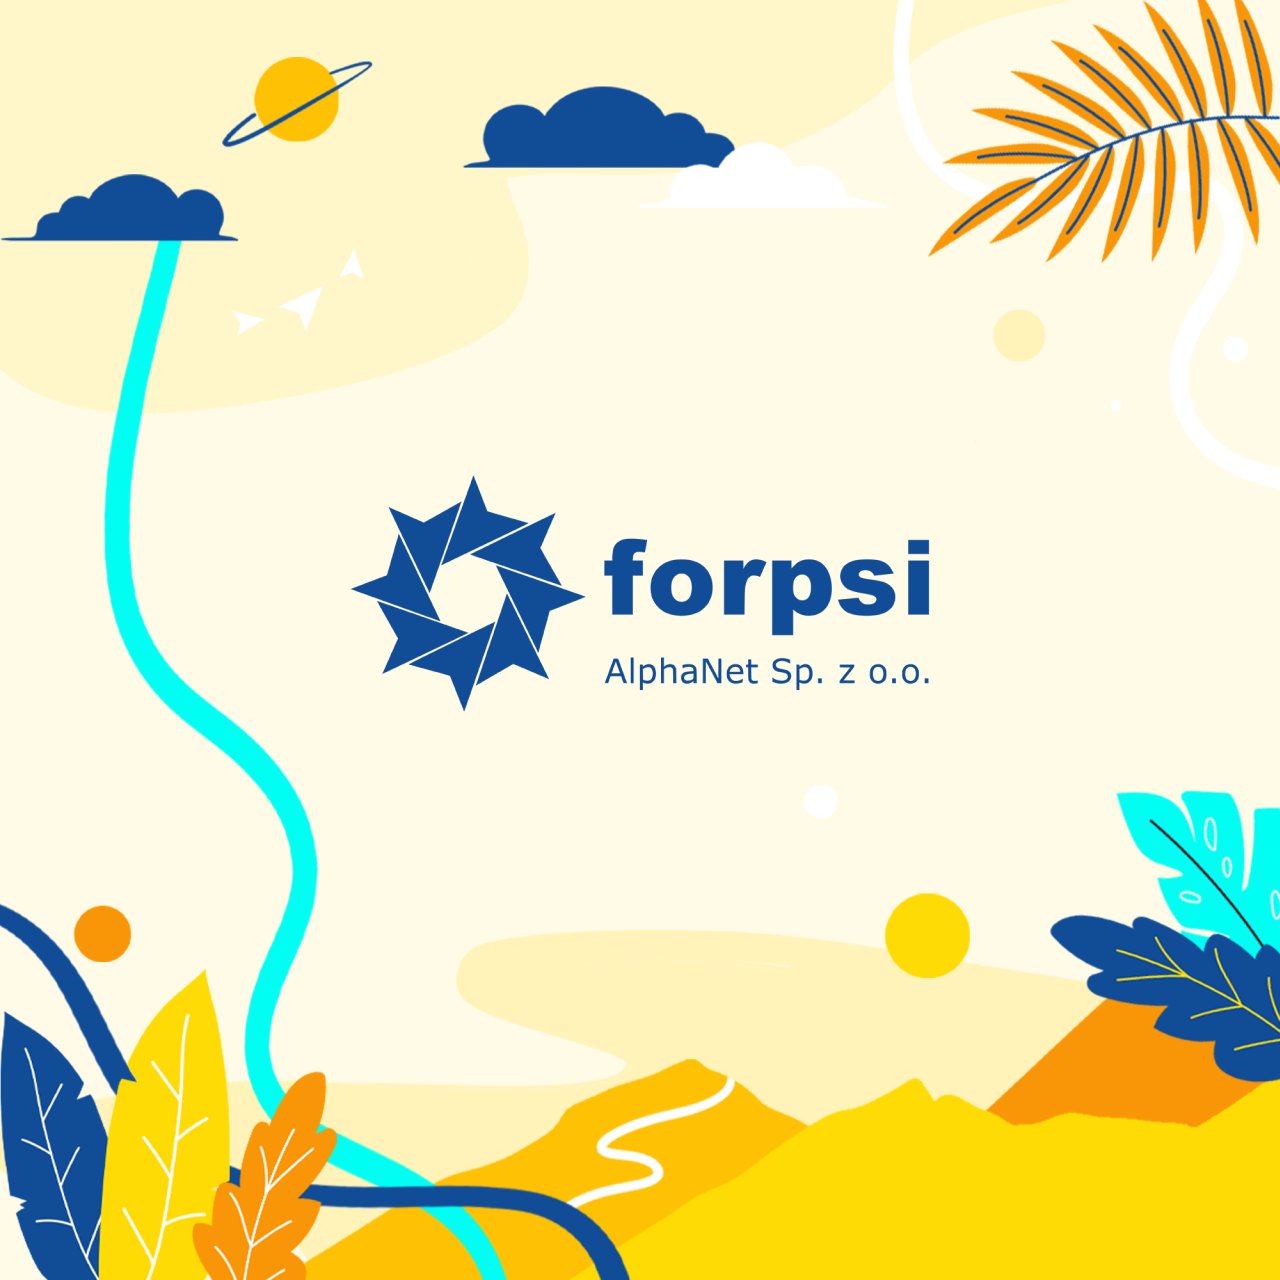 Sprawdzony hosting i domeny w Forpsi.pl